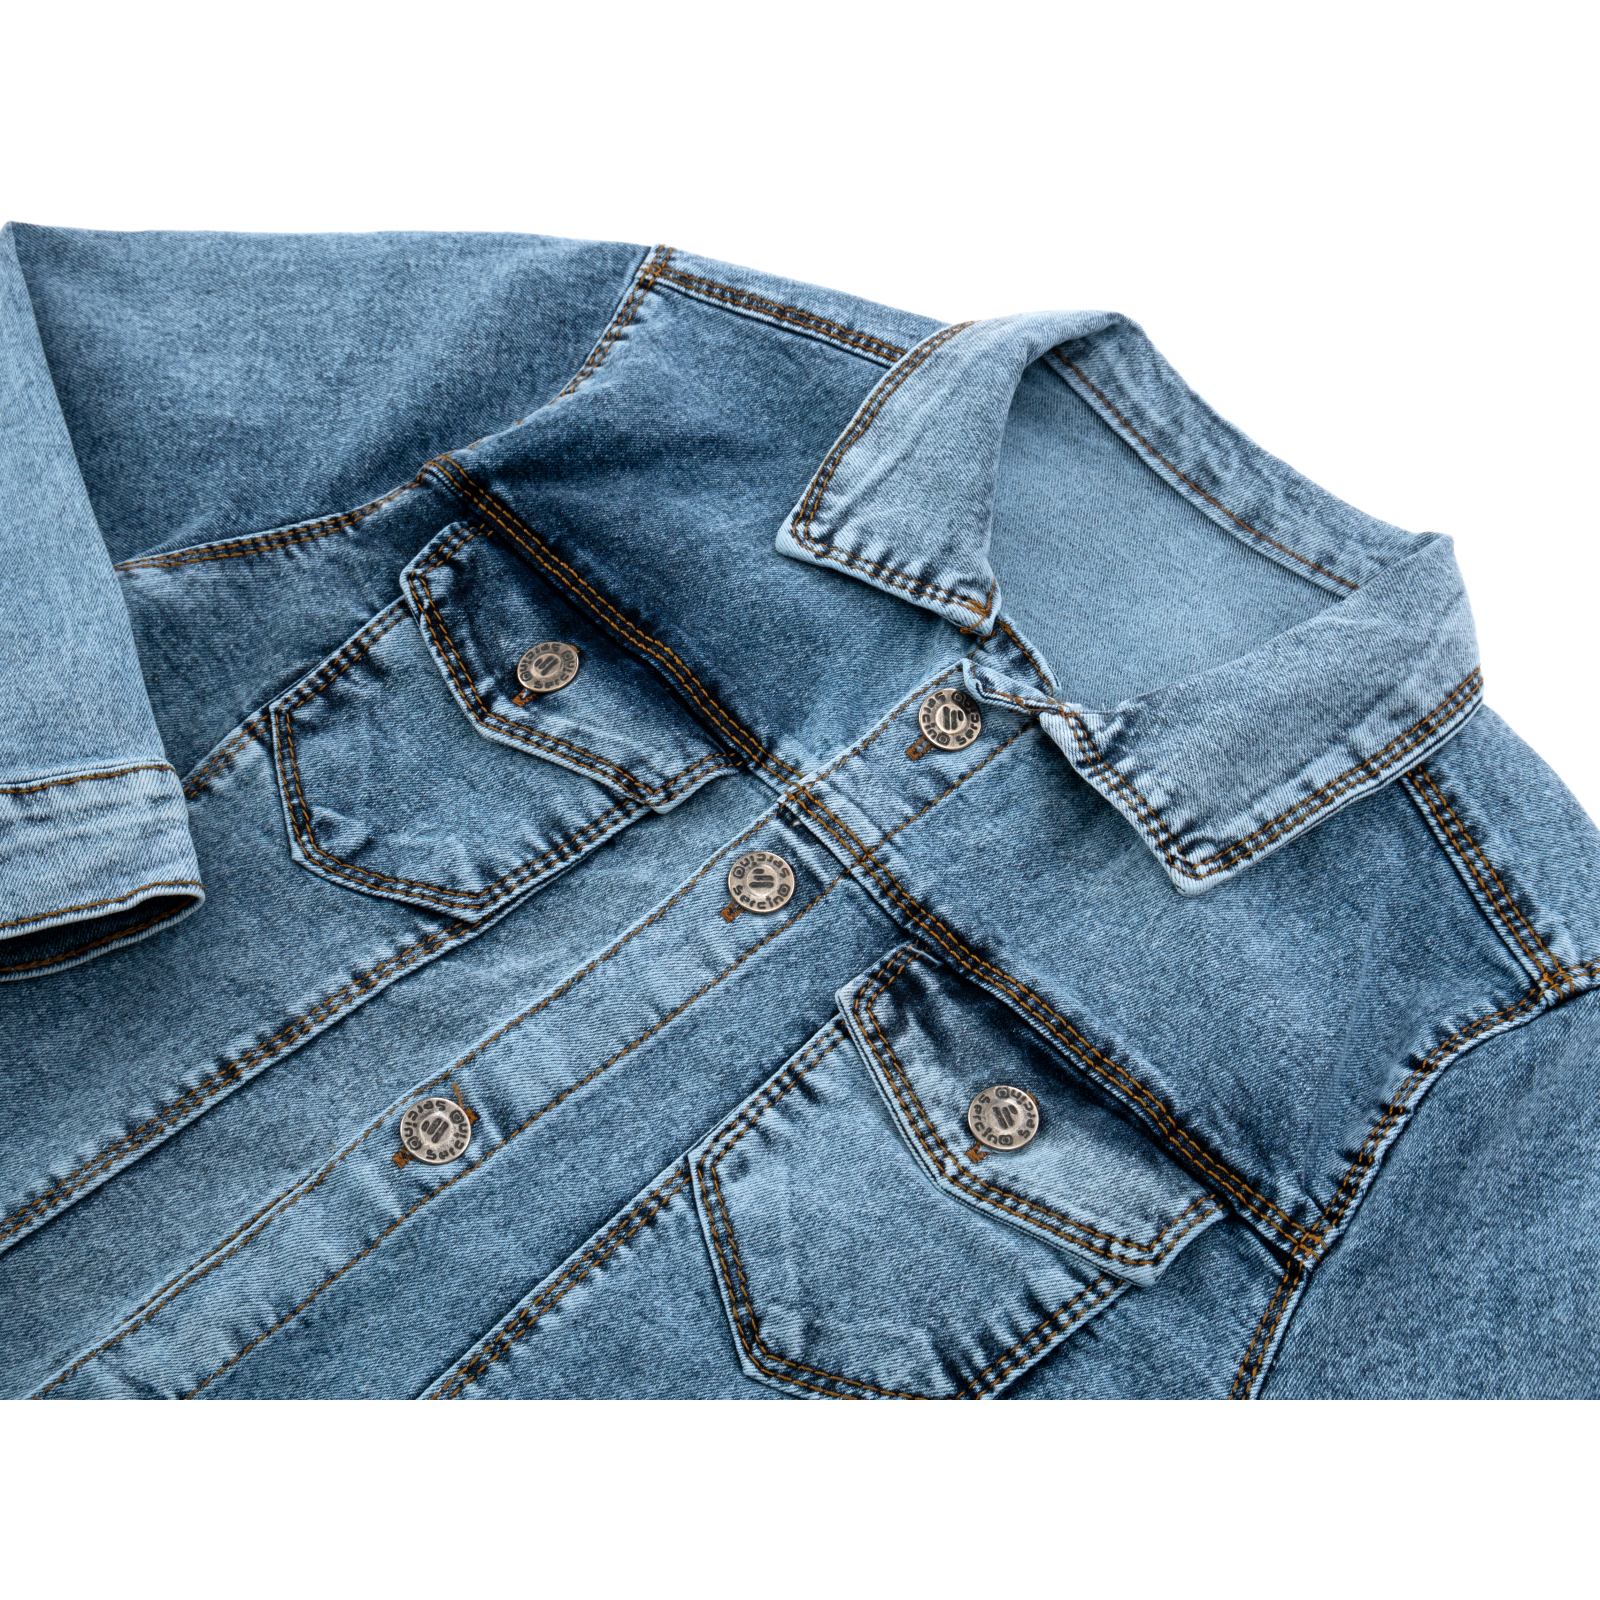 Піджак Sercino джинсовий (99723-140B-blue) зображення 3